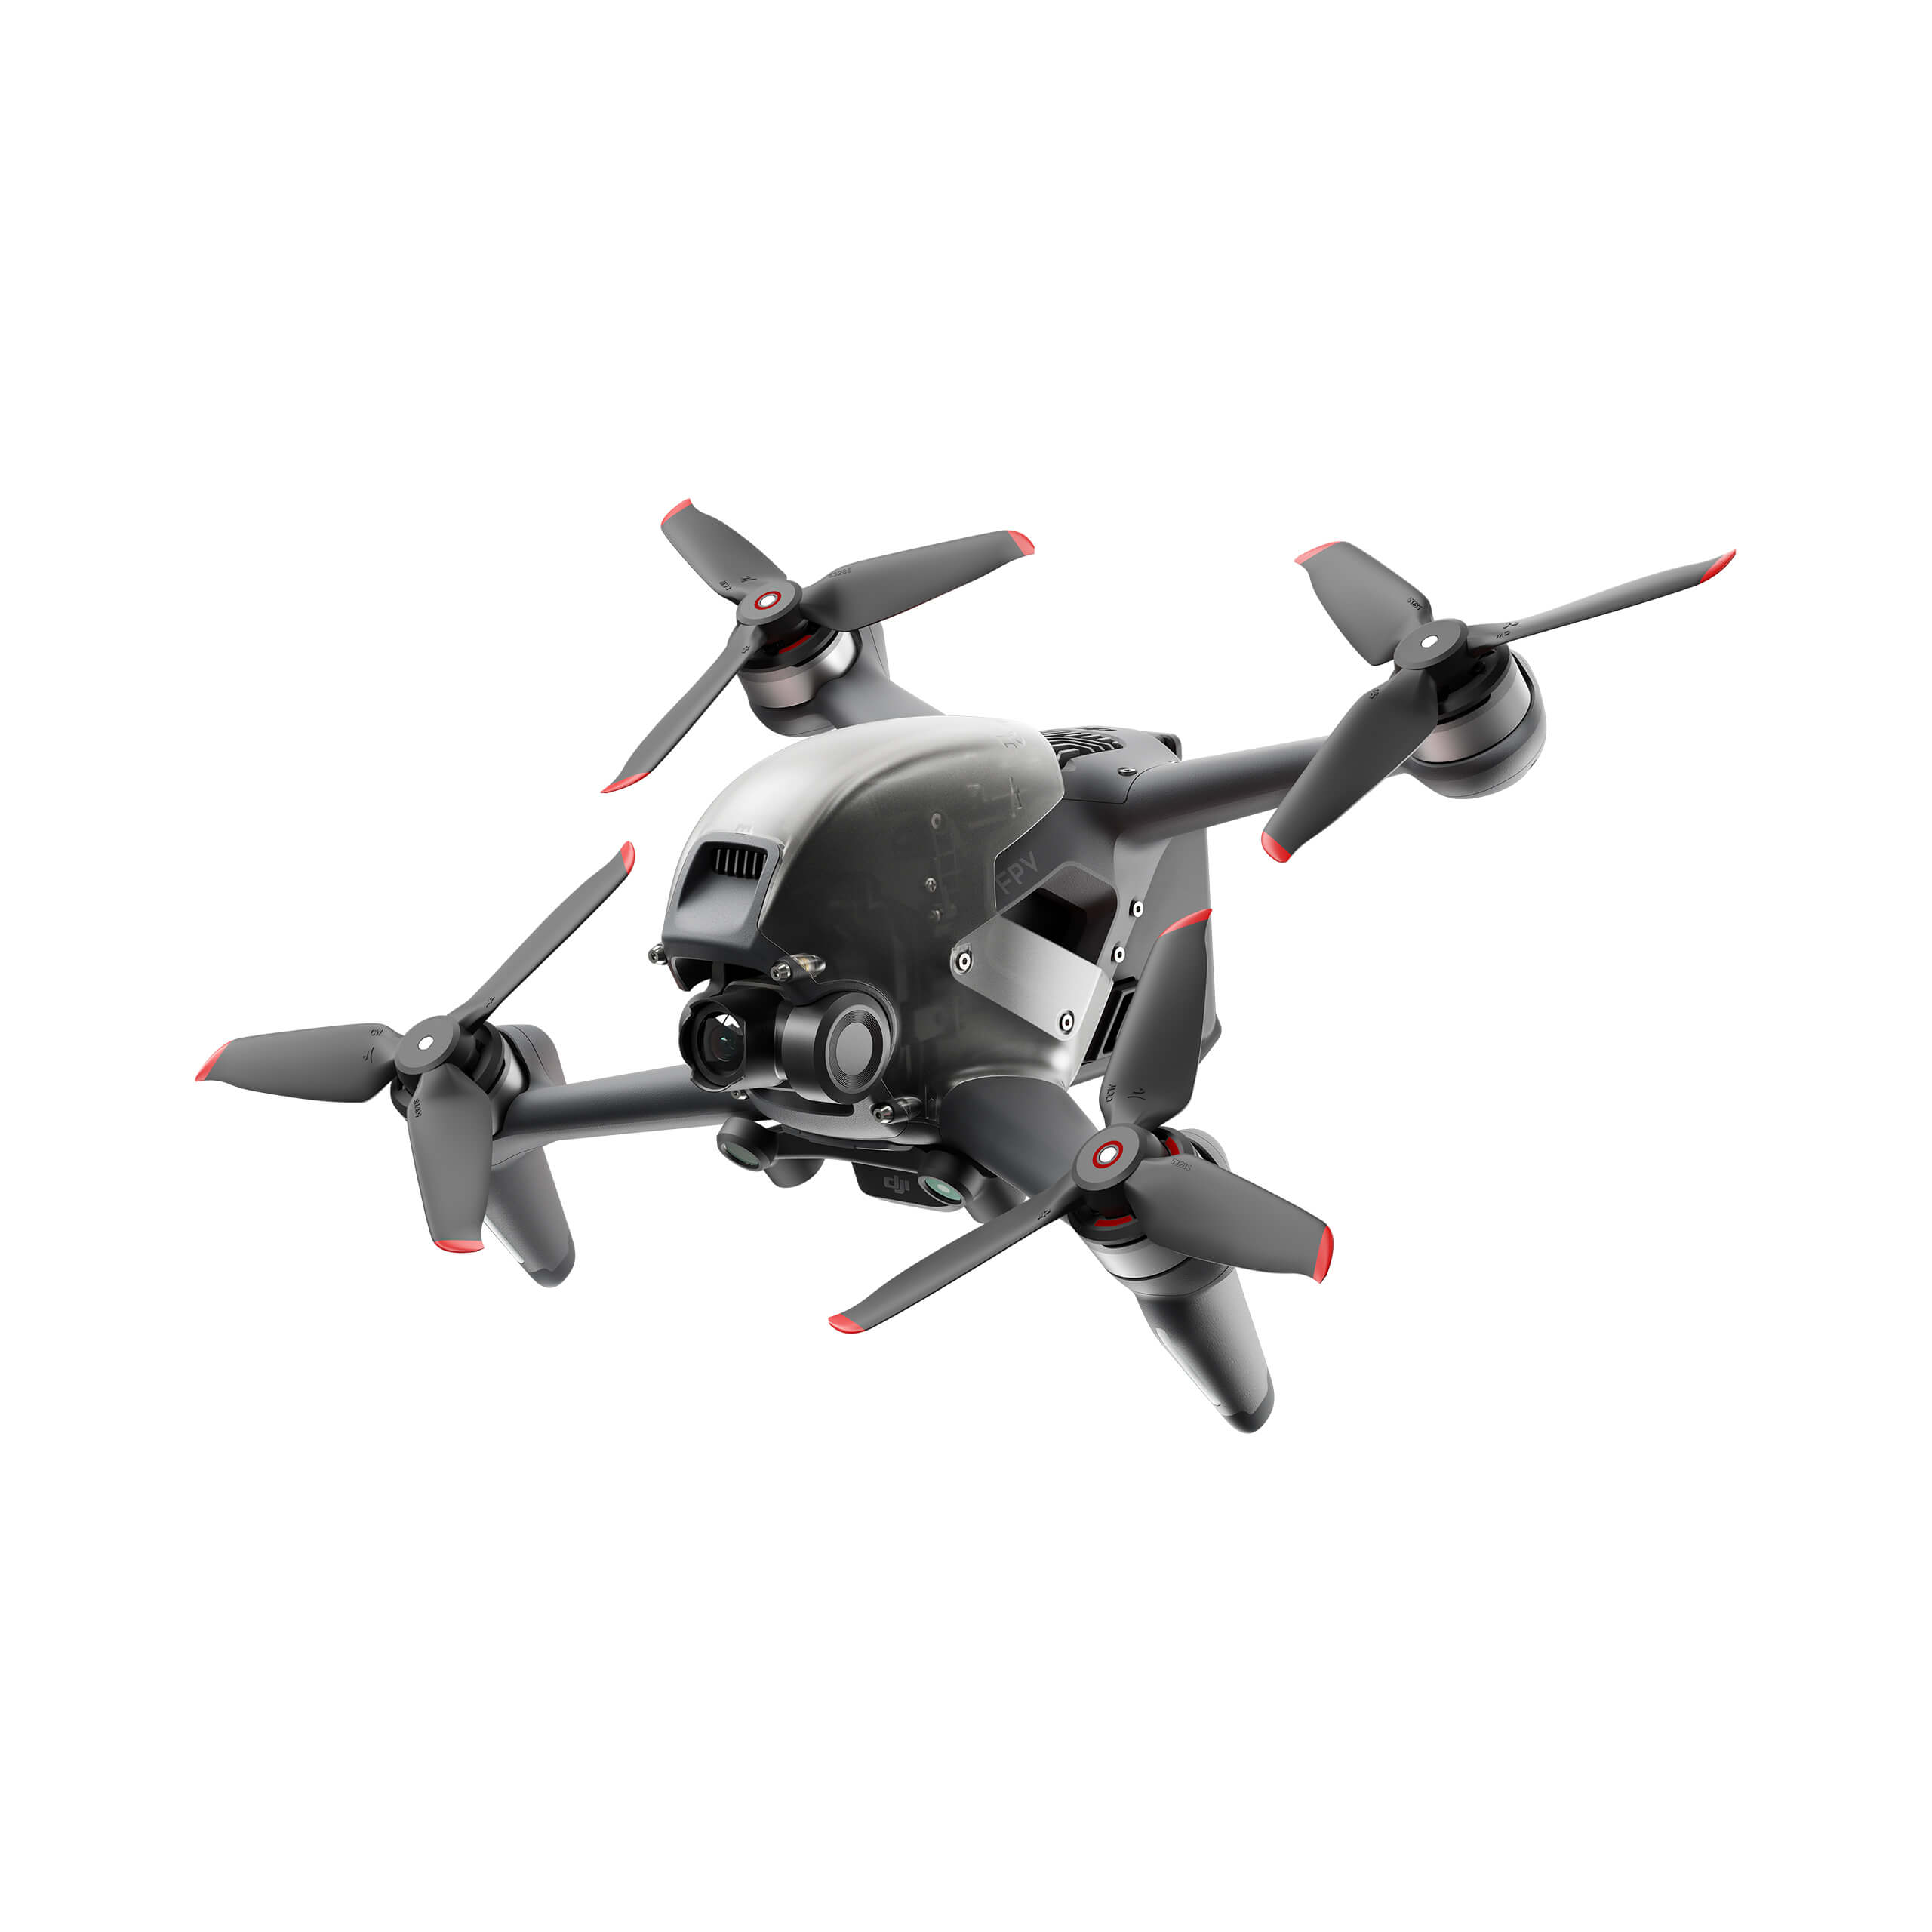 Kan niet lezen of schrijven Prooi kompas Koop DJI - FPV Drone - Redefine Flying - Gratis verzending